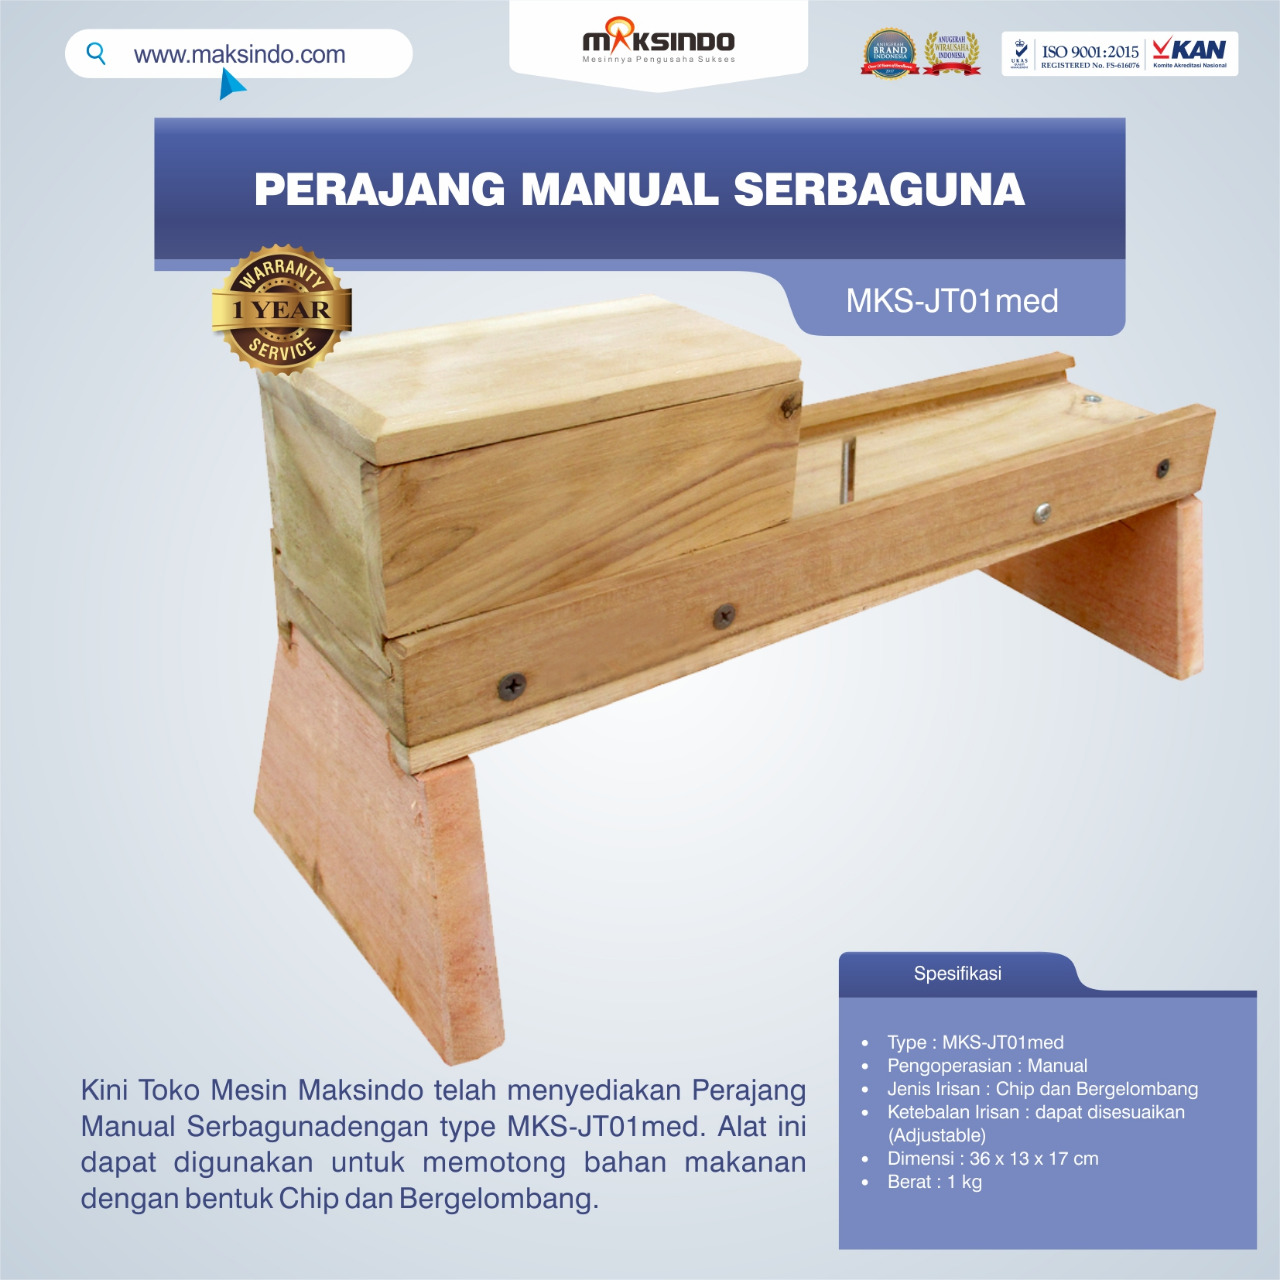 Jual Perajang Manual Serbaguna MKS-JT01med di Semarang